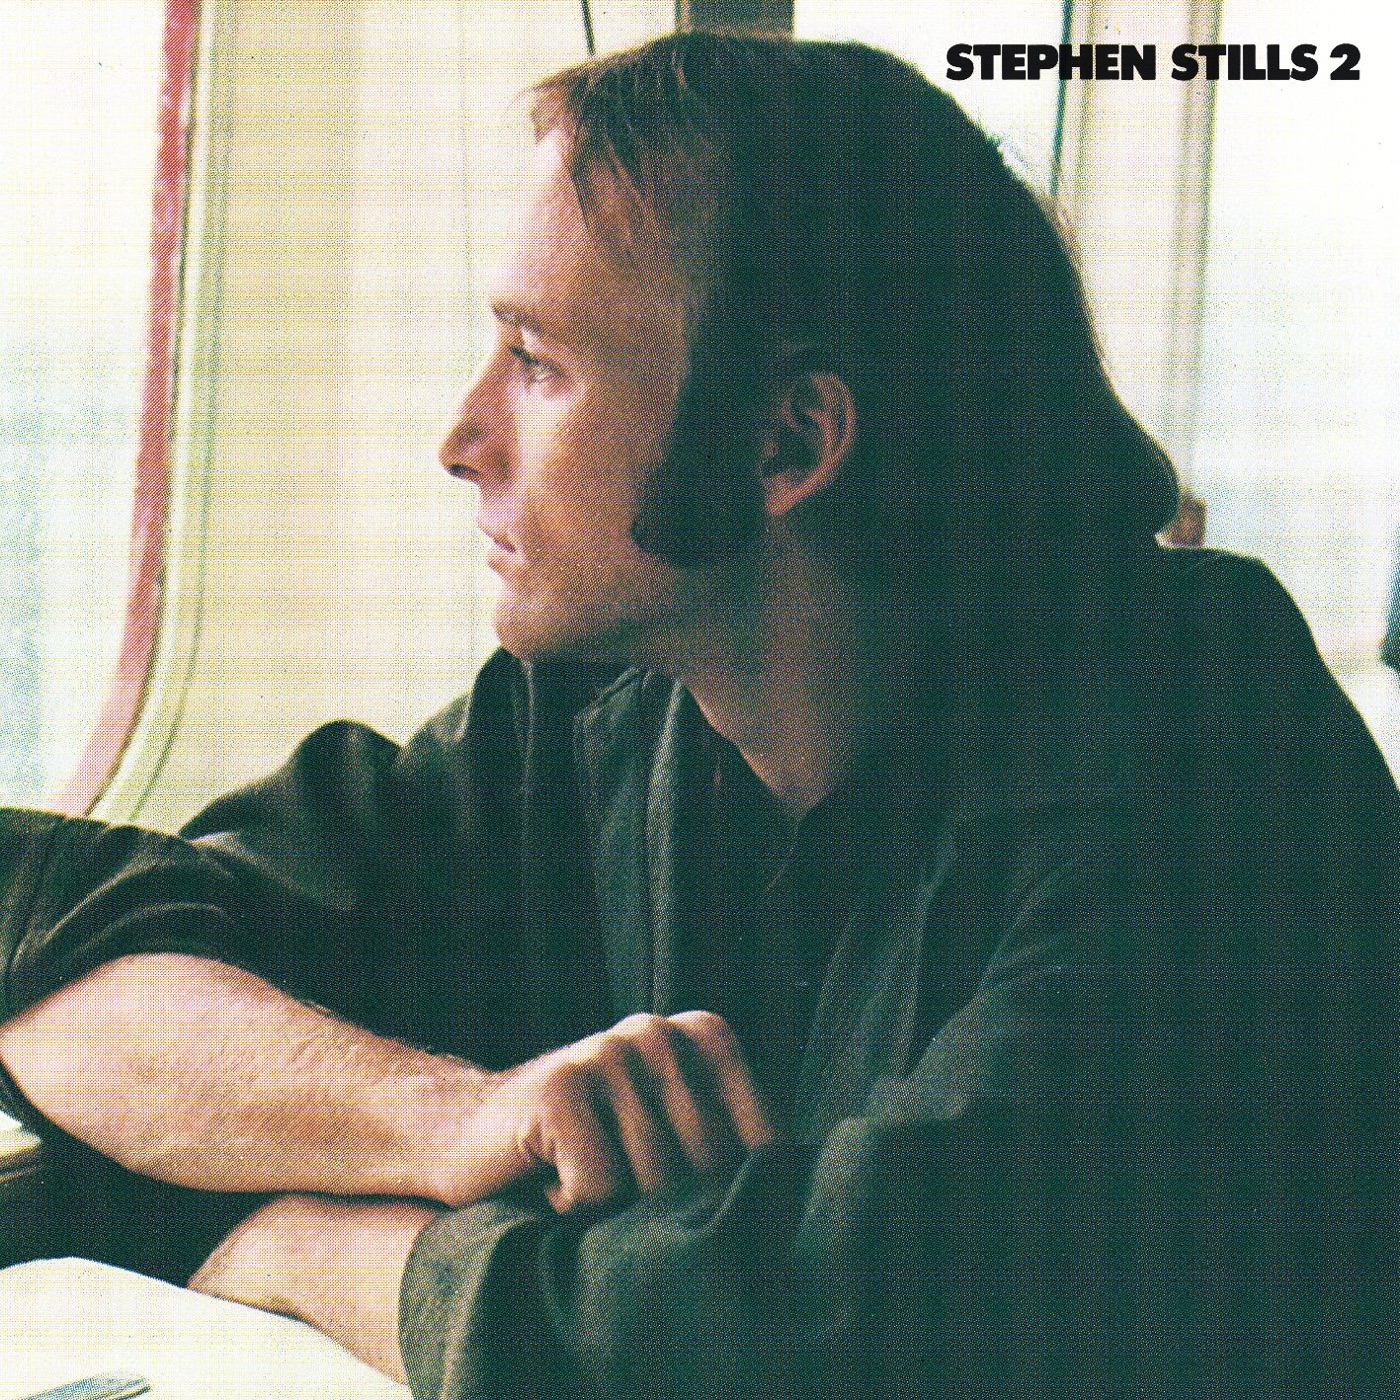 Stephen Stills 2 by Stephen Stills